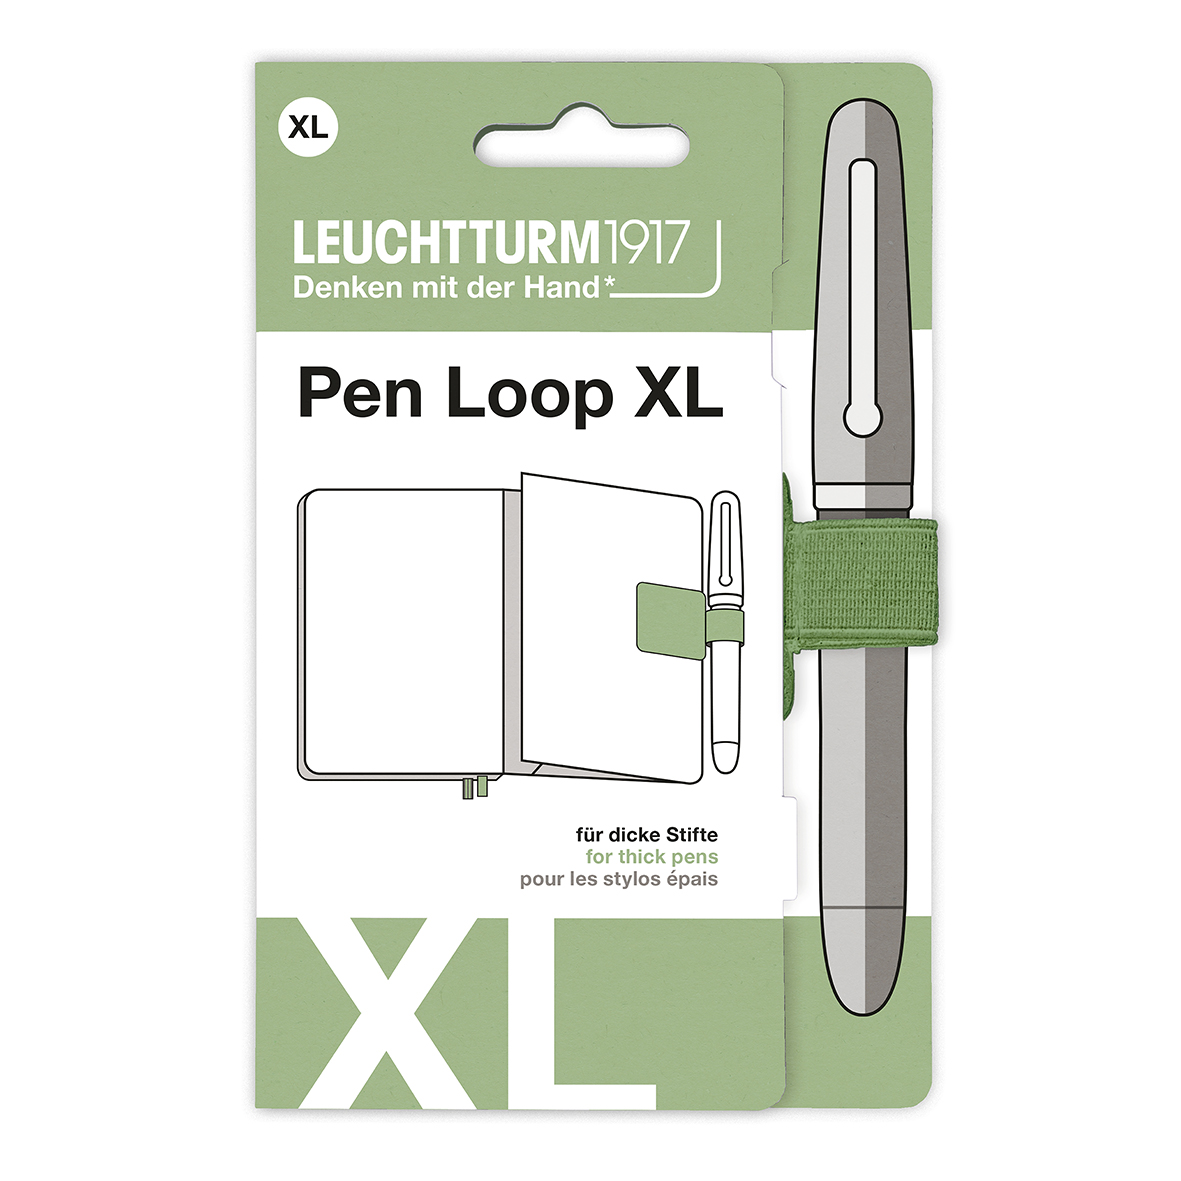 Петля самоклеящаяся Pen Loop XL для ручек Leuchtturm цвет Шалфей